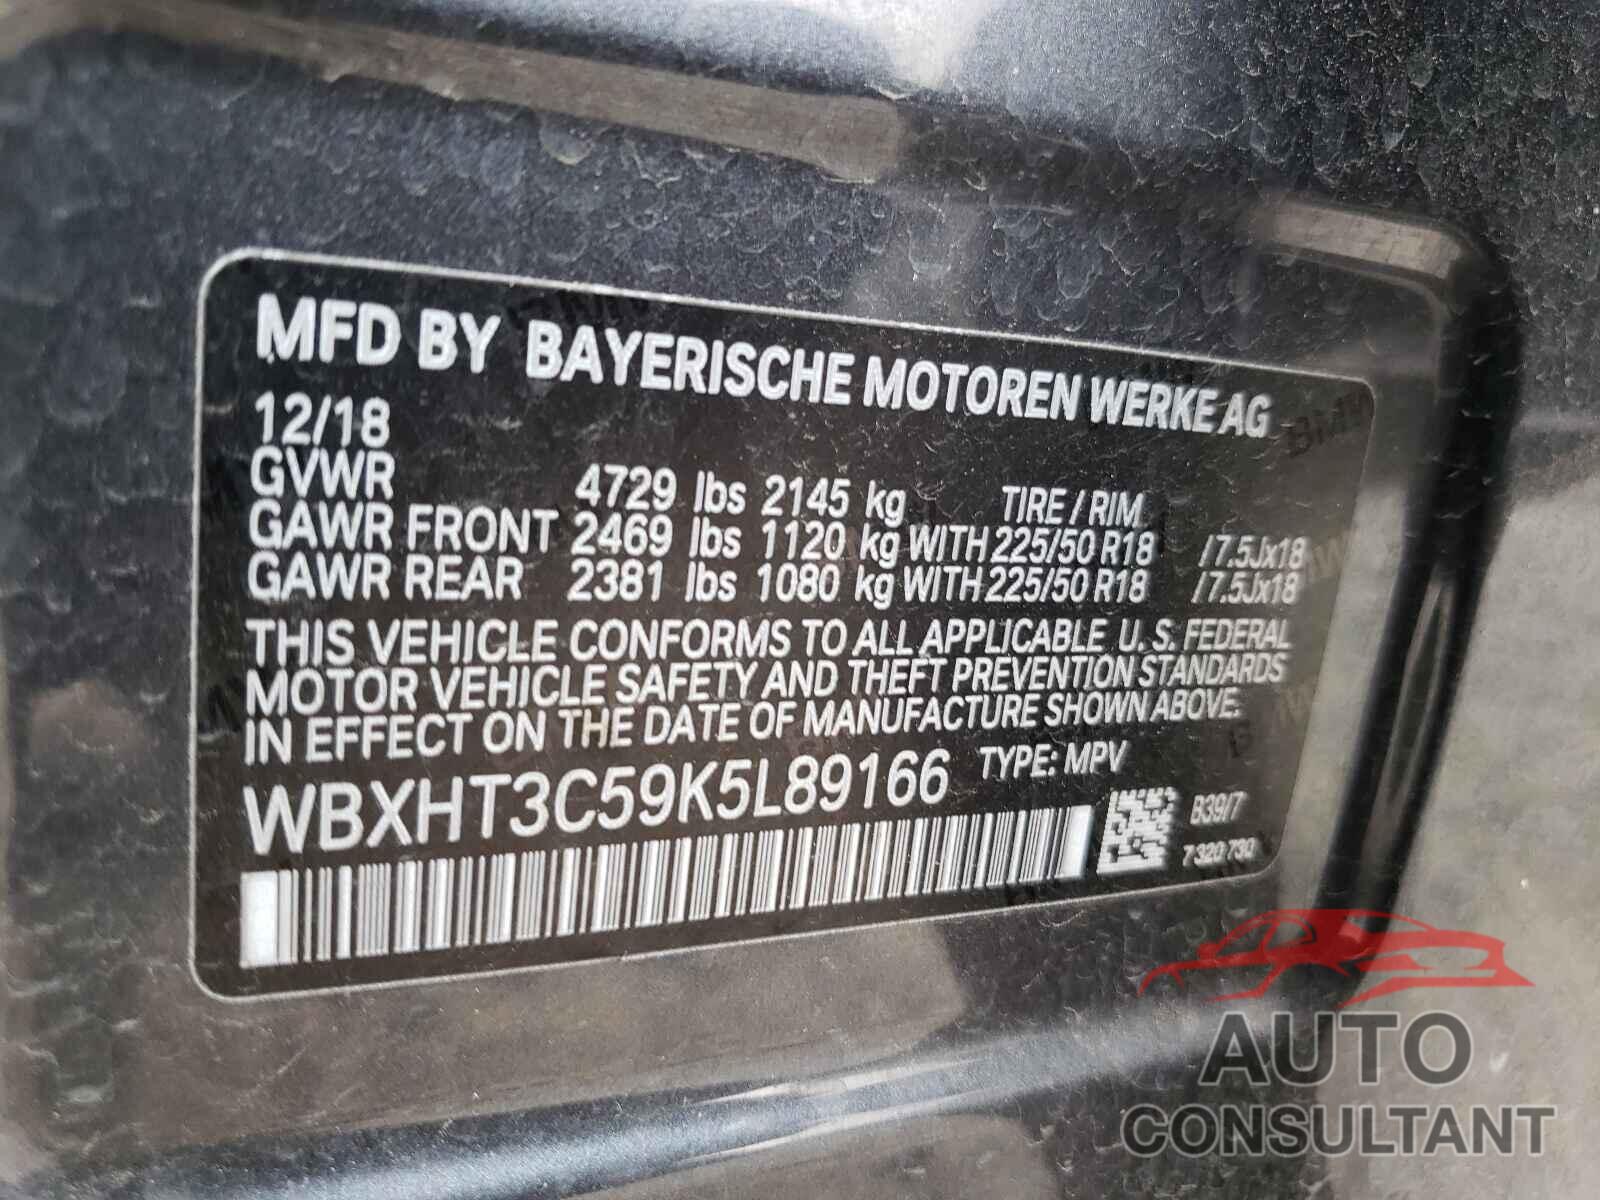 BMW X1 2019 - WBXHT3C59K5L89166